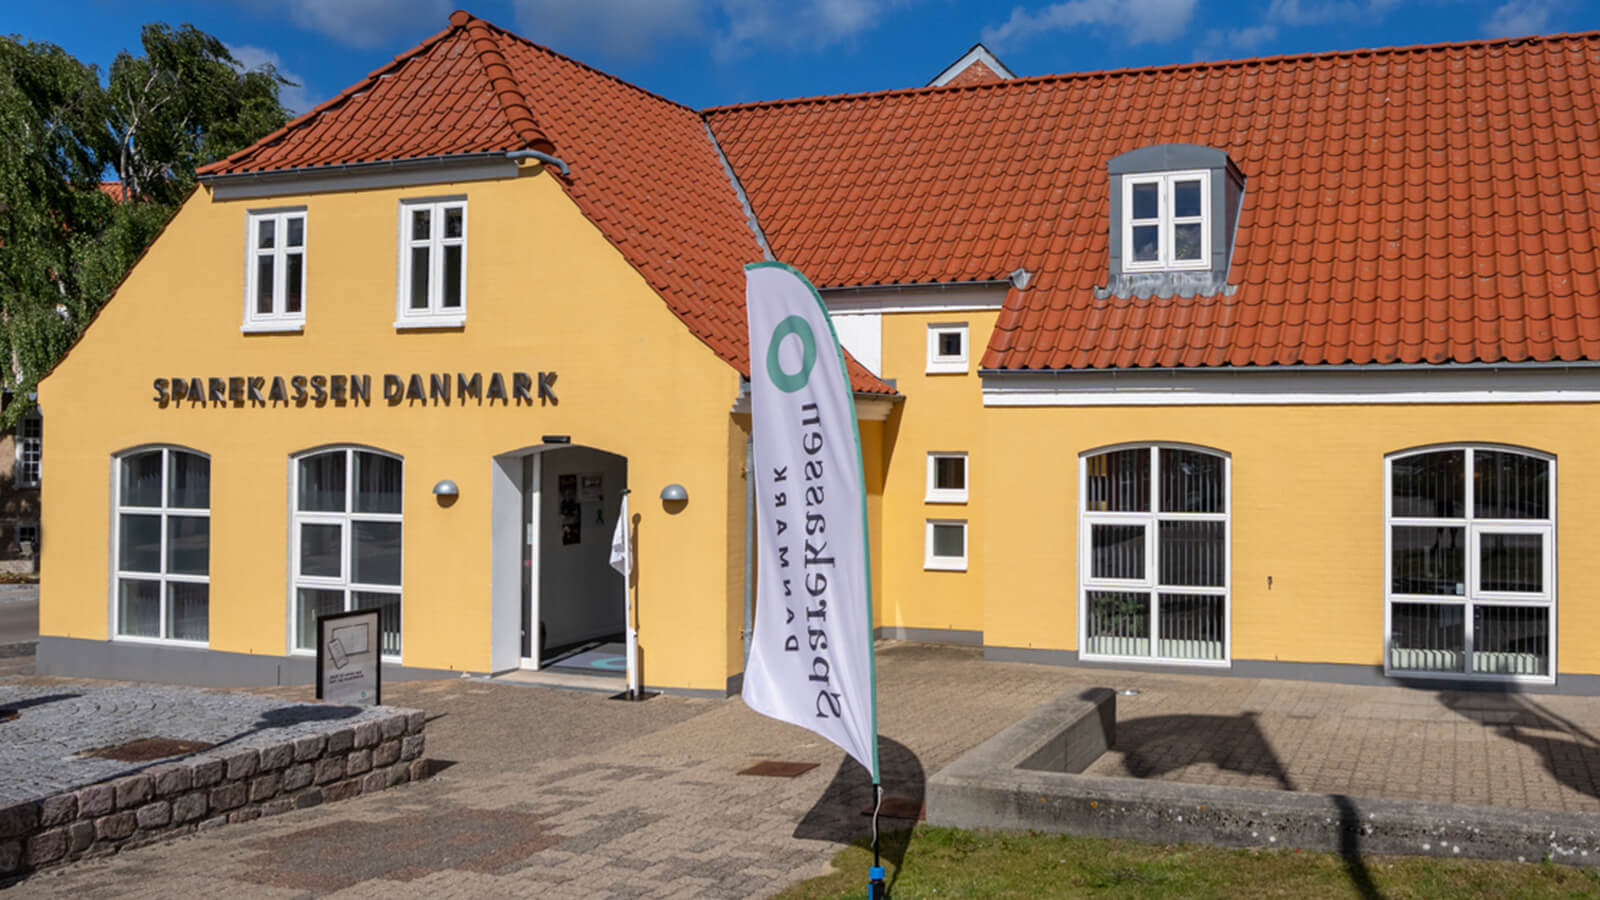 Sparekassen Danmark, Sæby